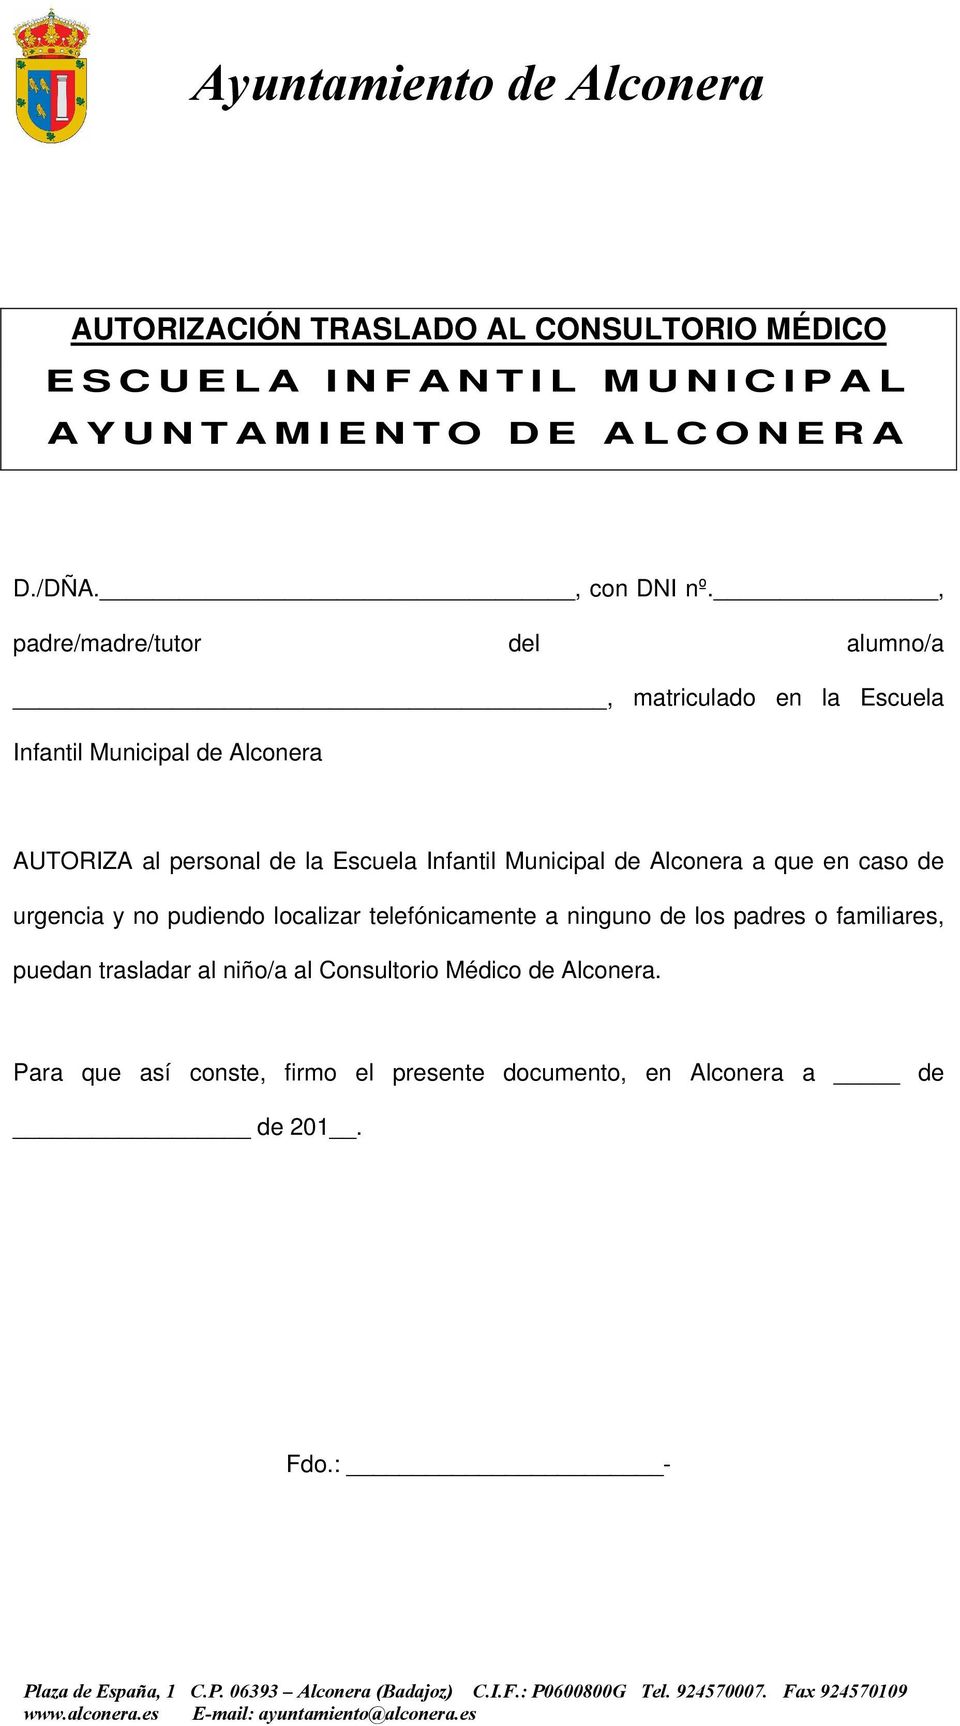 Escuela Infantil Municipal de Alconera a que en caso de urgencia y no pudiendo localizar telefónicamente a ninguno de